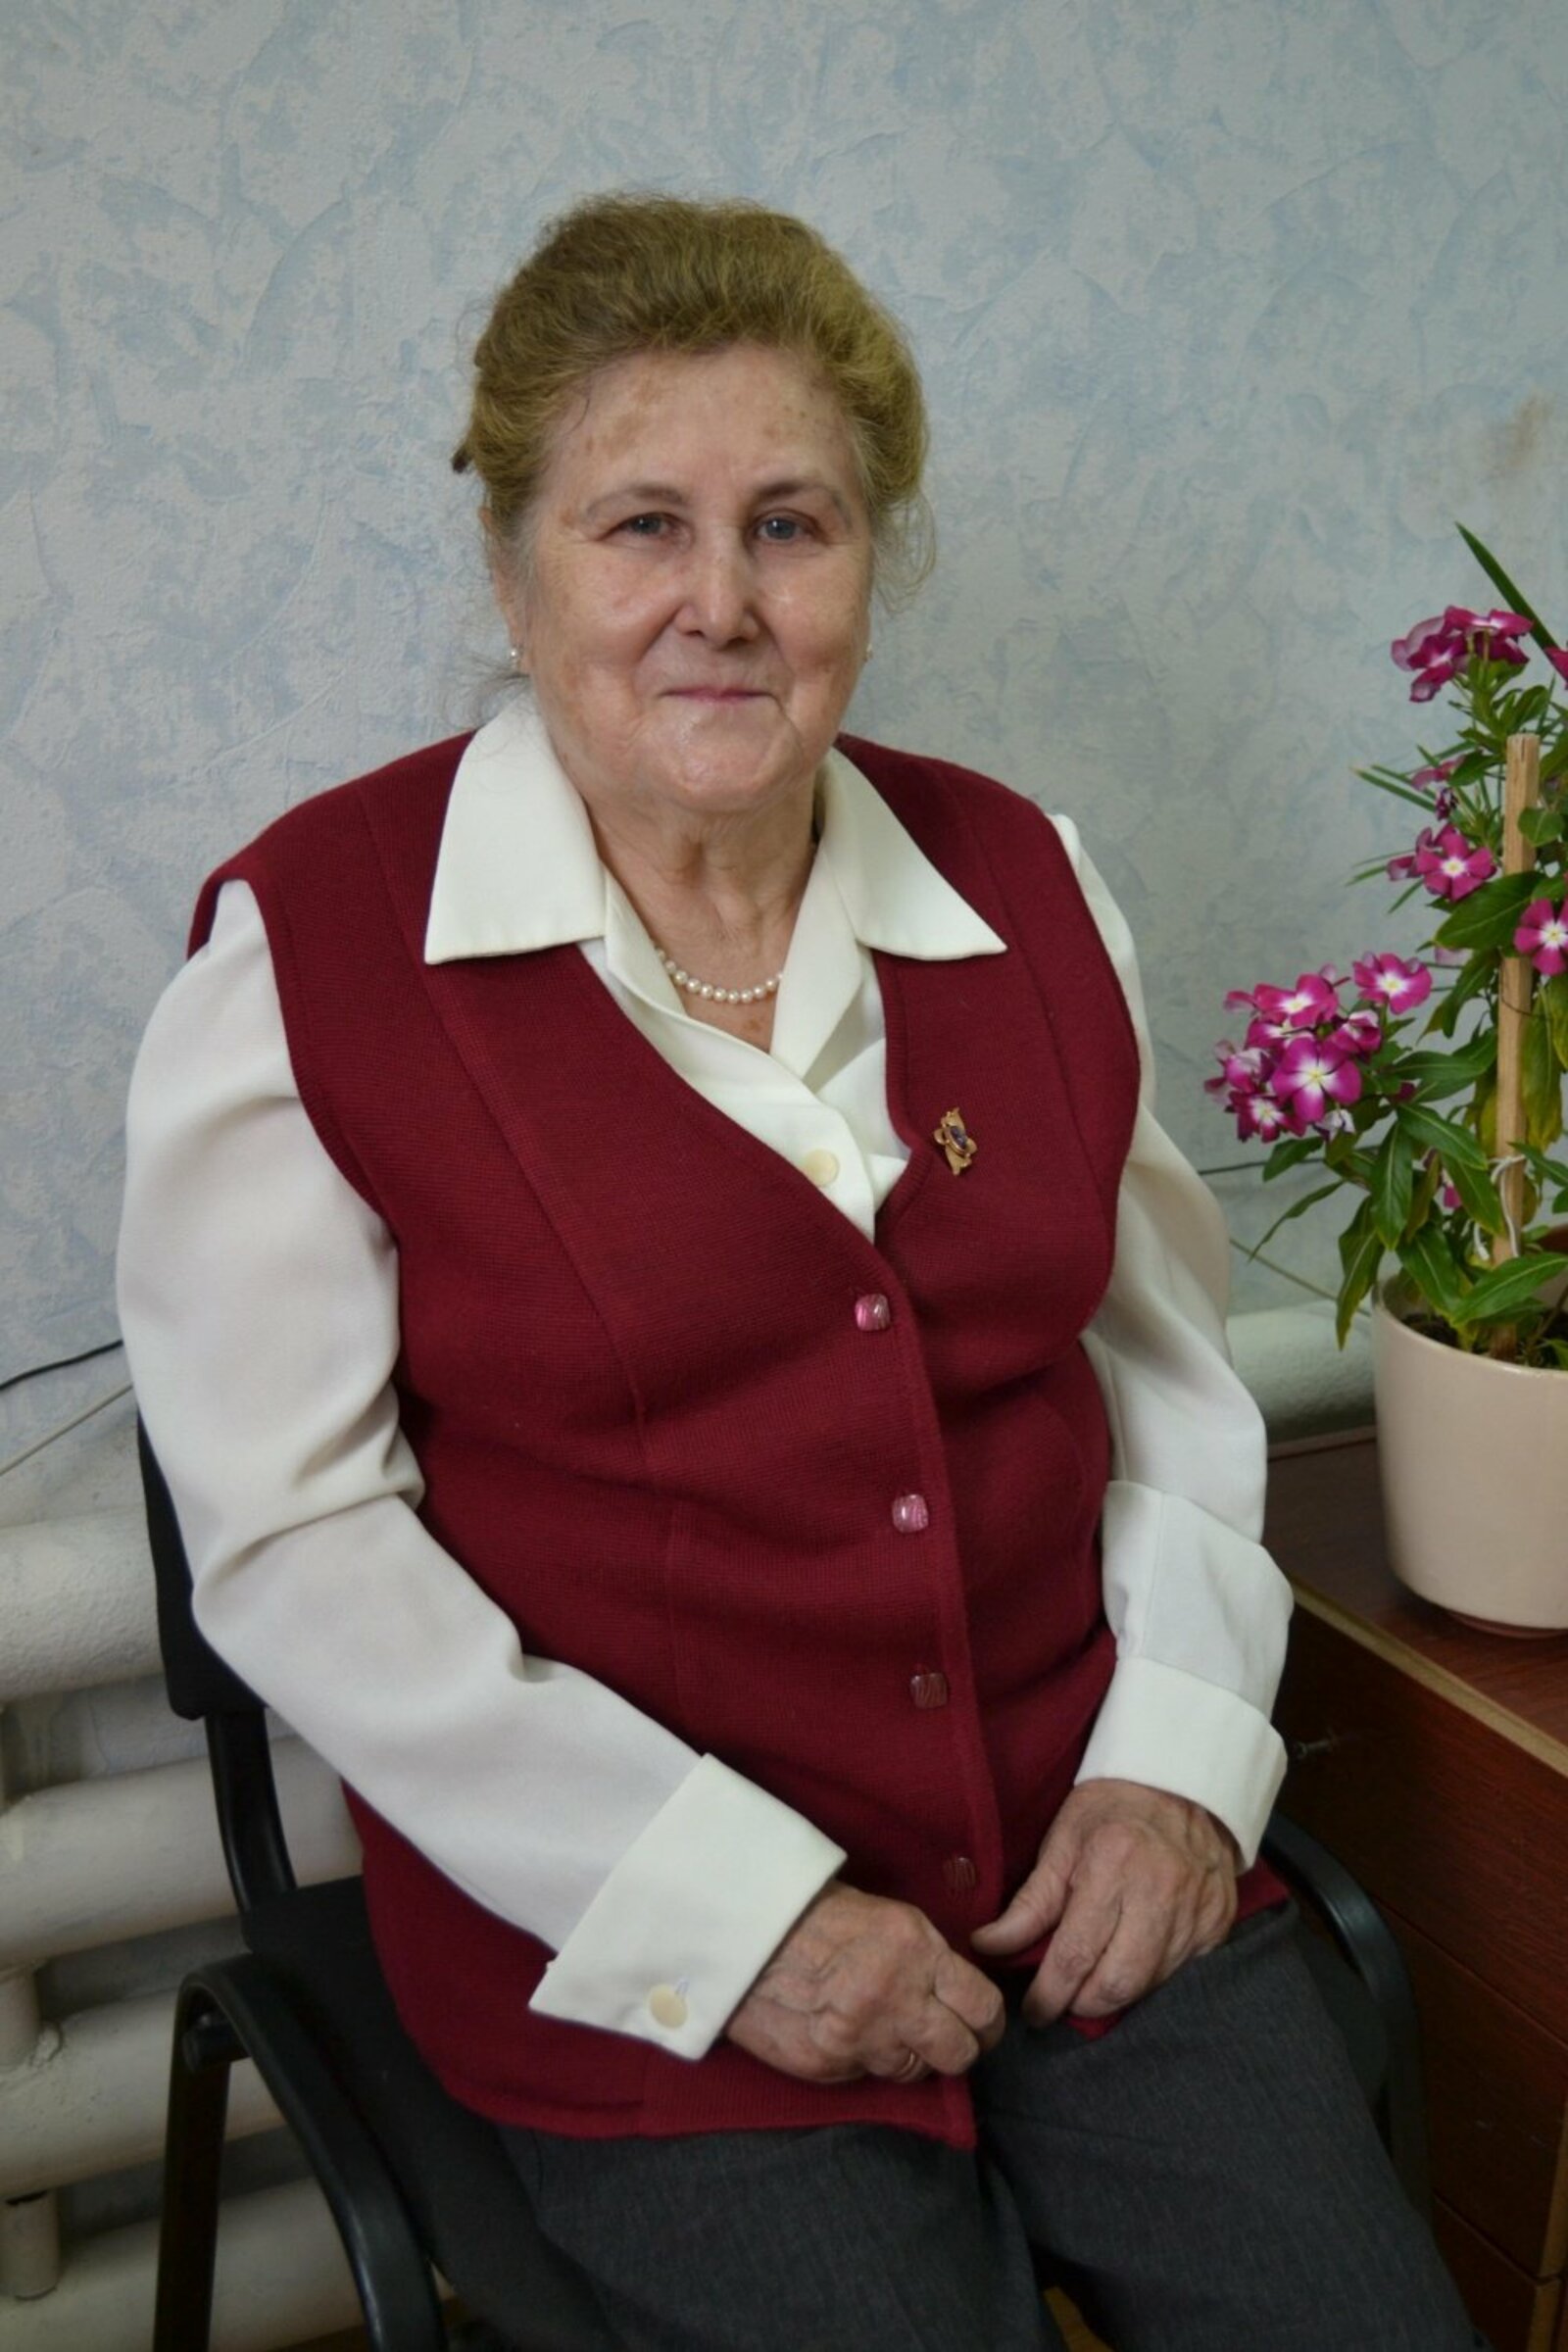 Недавно Гульнур Файзрахмановна Данилко  (на снимке) отметила свой прекрасный  юбилей – 75-летие со дня рождения.